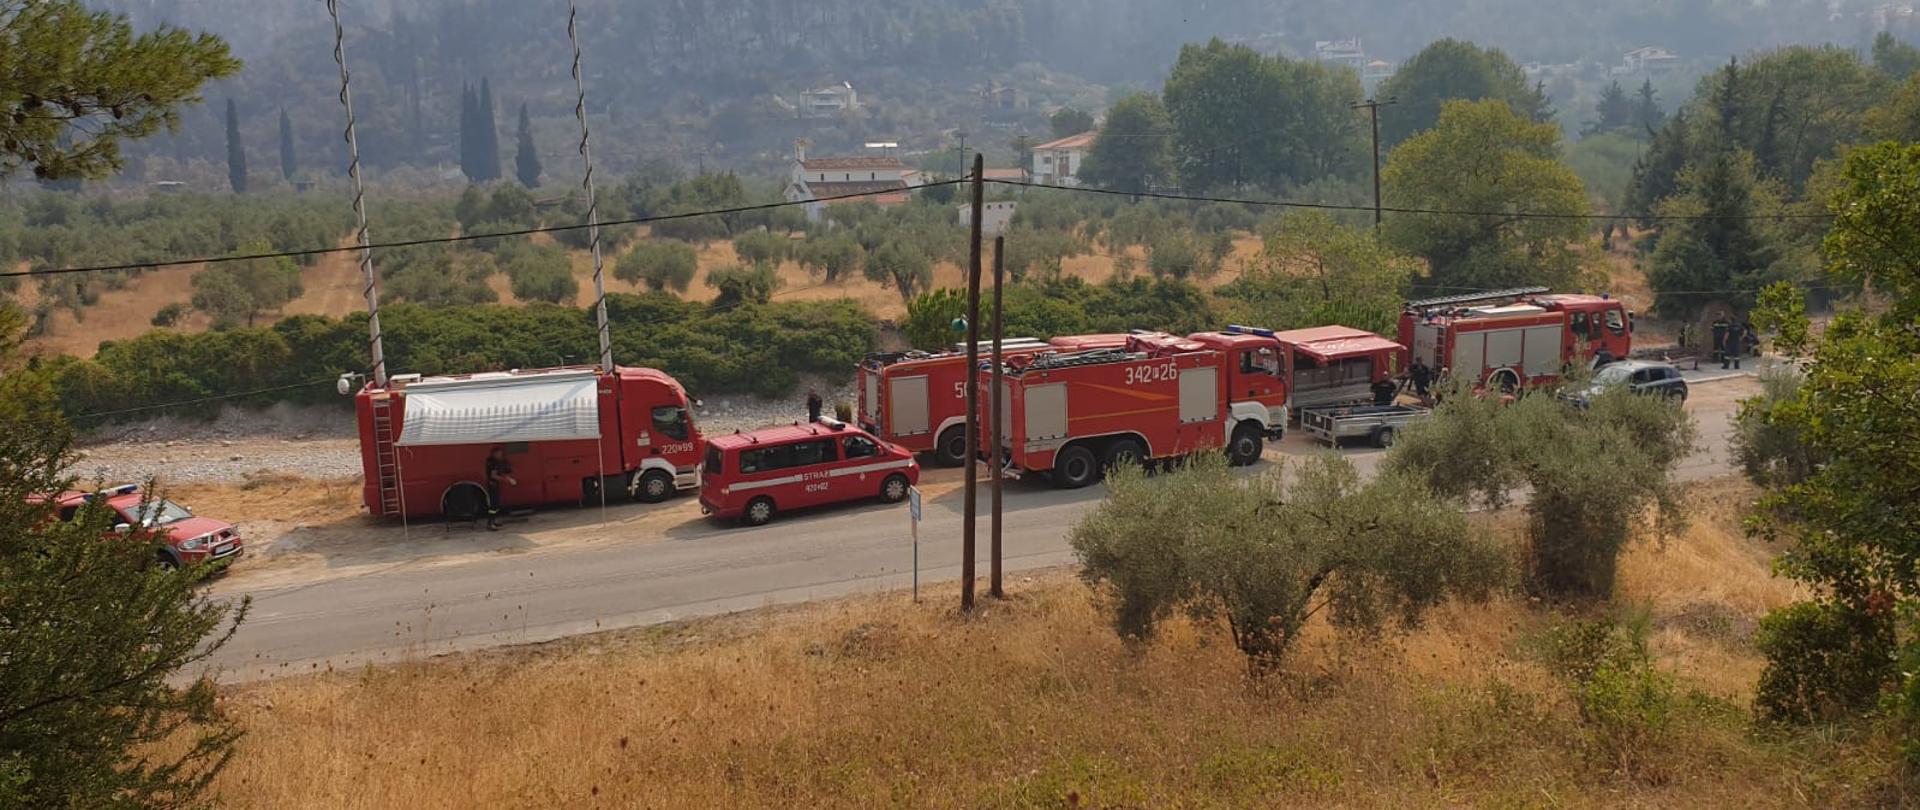 Zdjęcie przedstawia pojazdy pożarnicze podczas postoju przy drodze w trakcie przygotowań do działań.